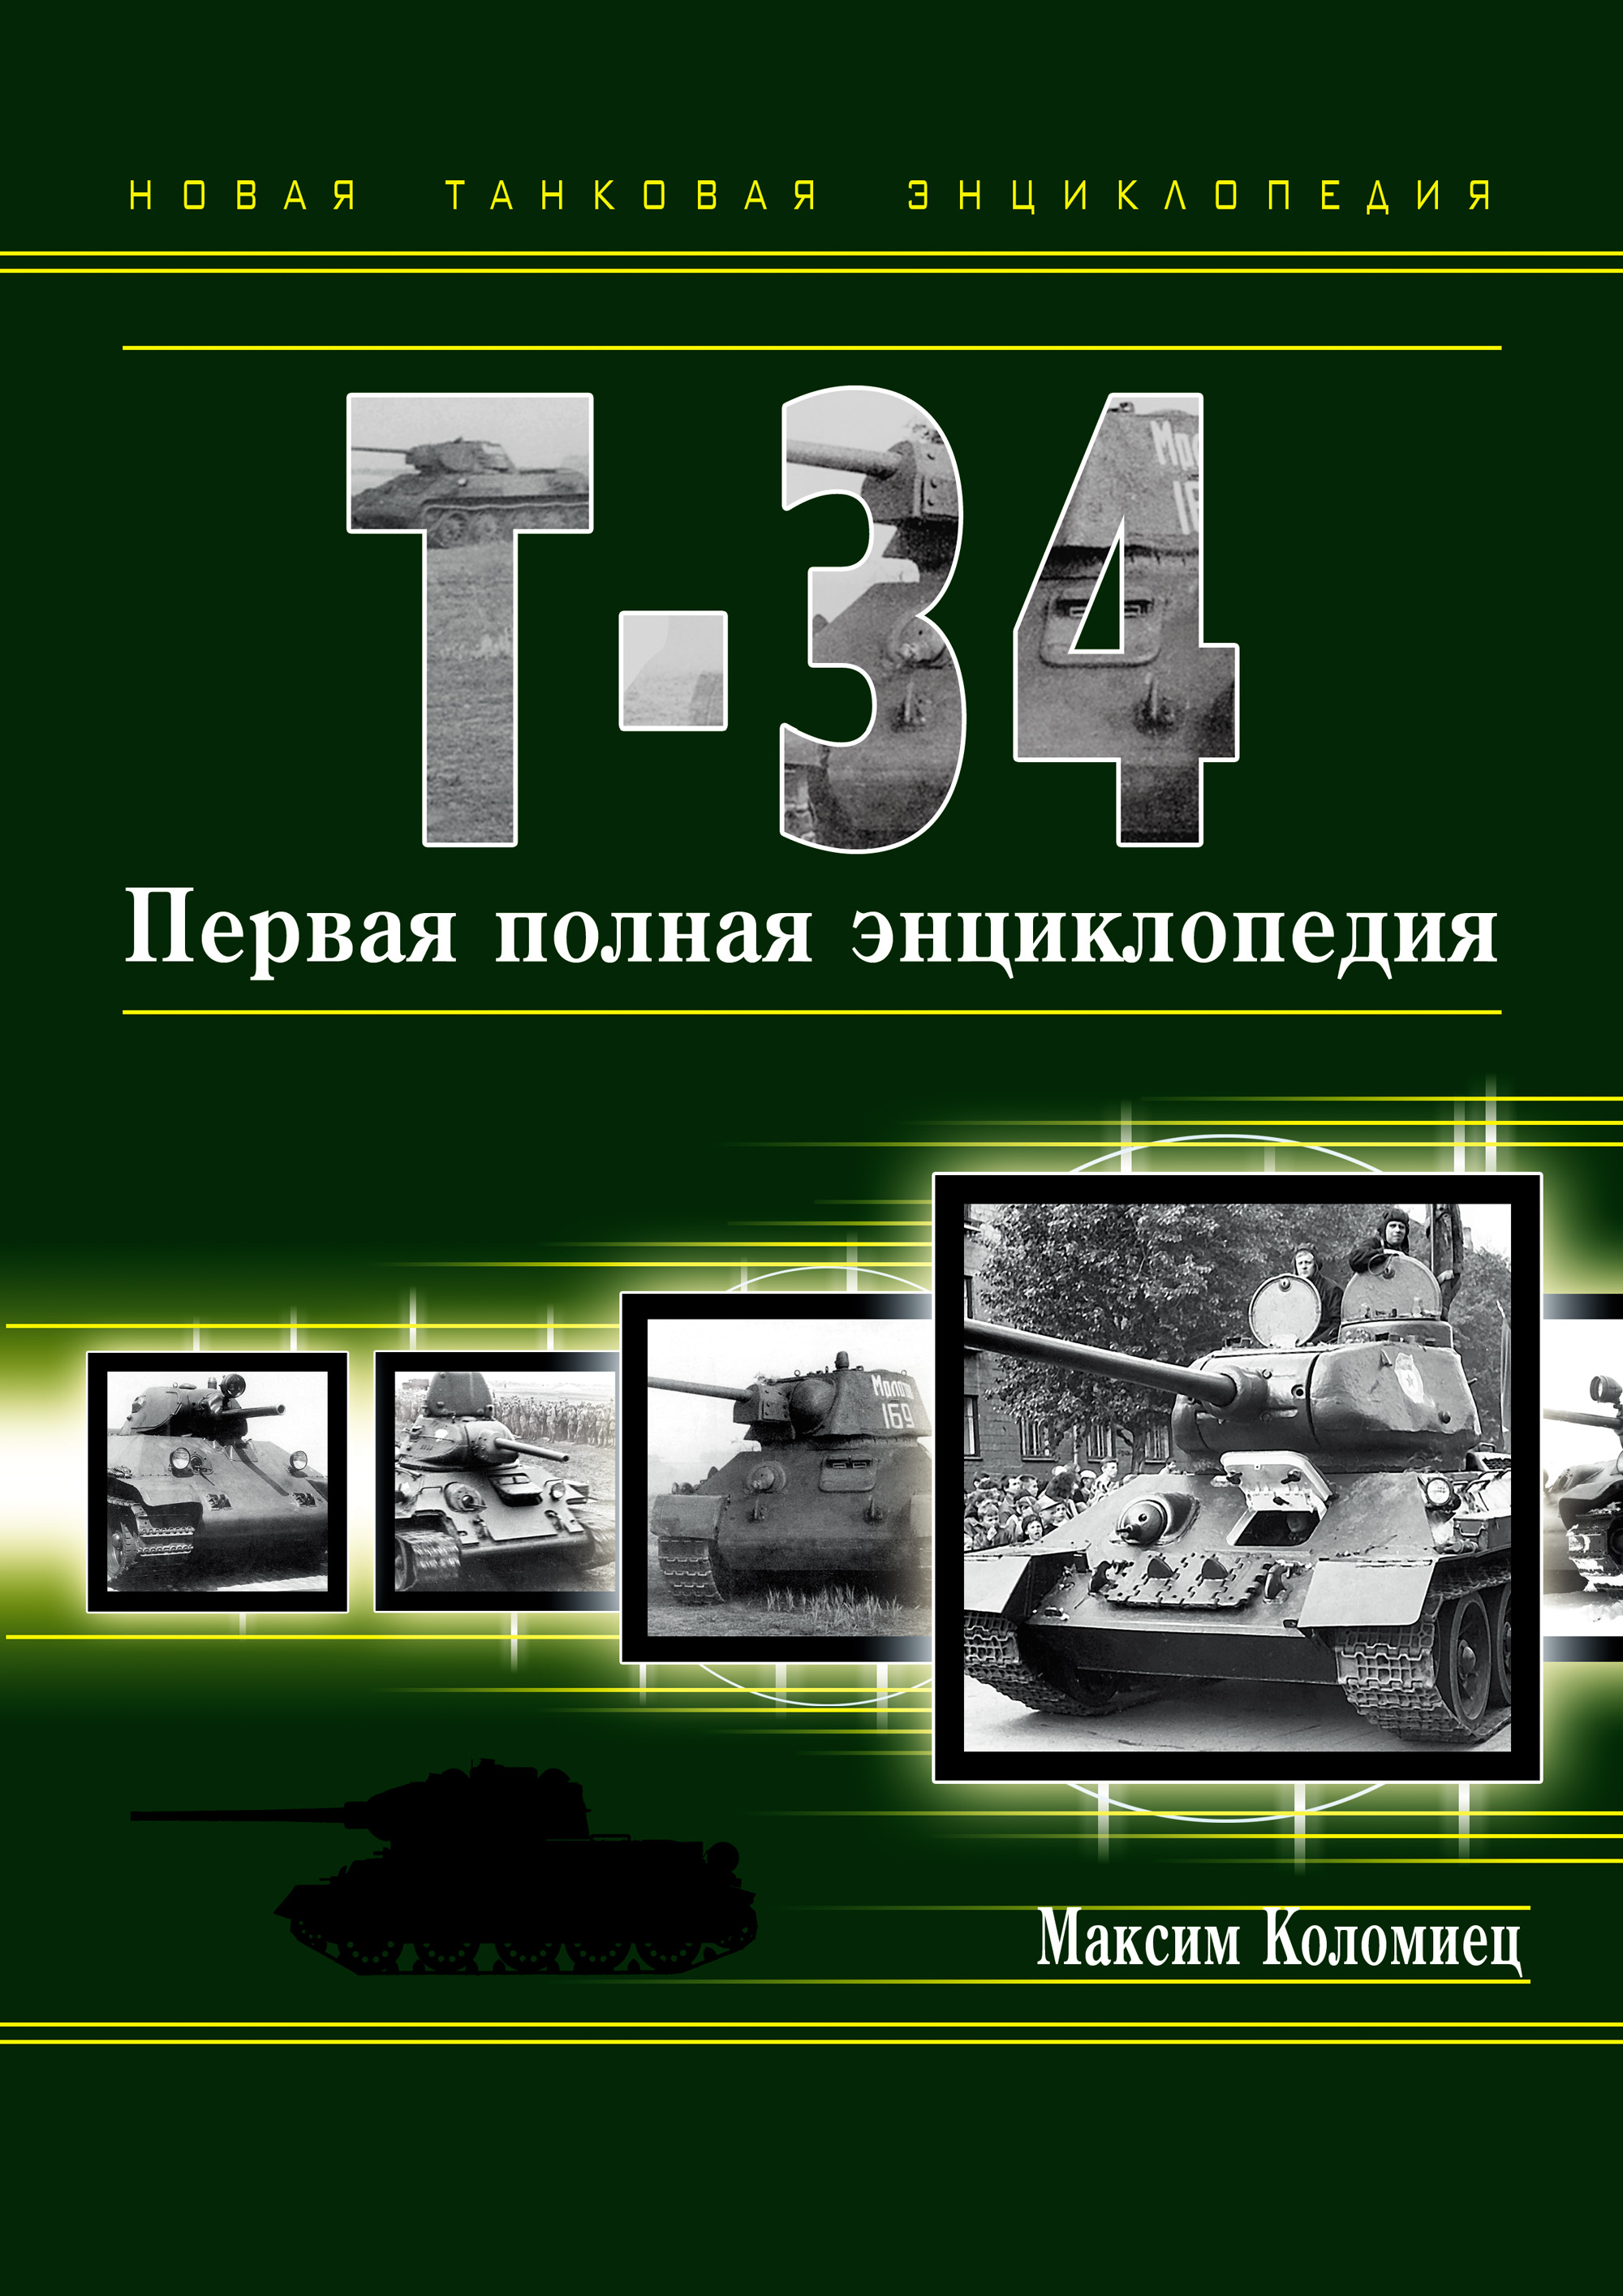 Максим Коломиец - «Т-34. Первая полная энциклопедия»